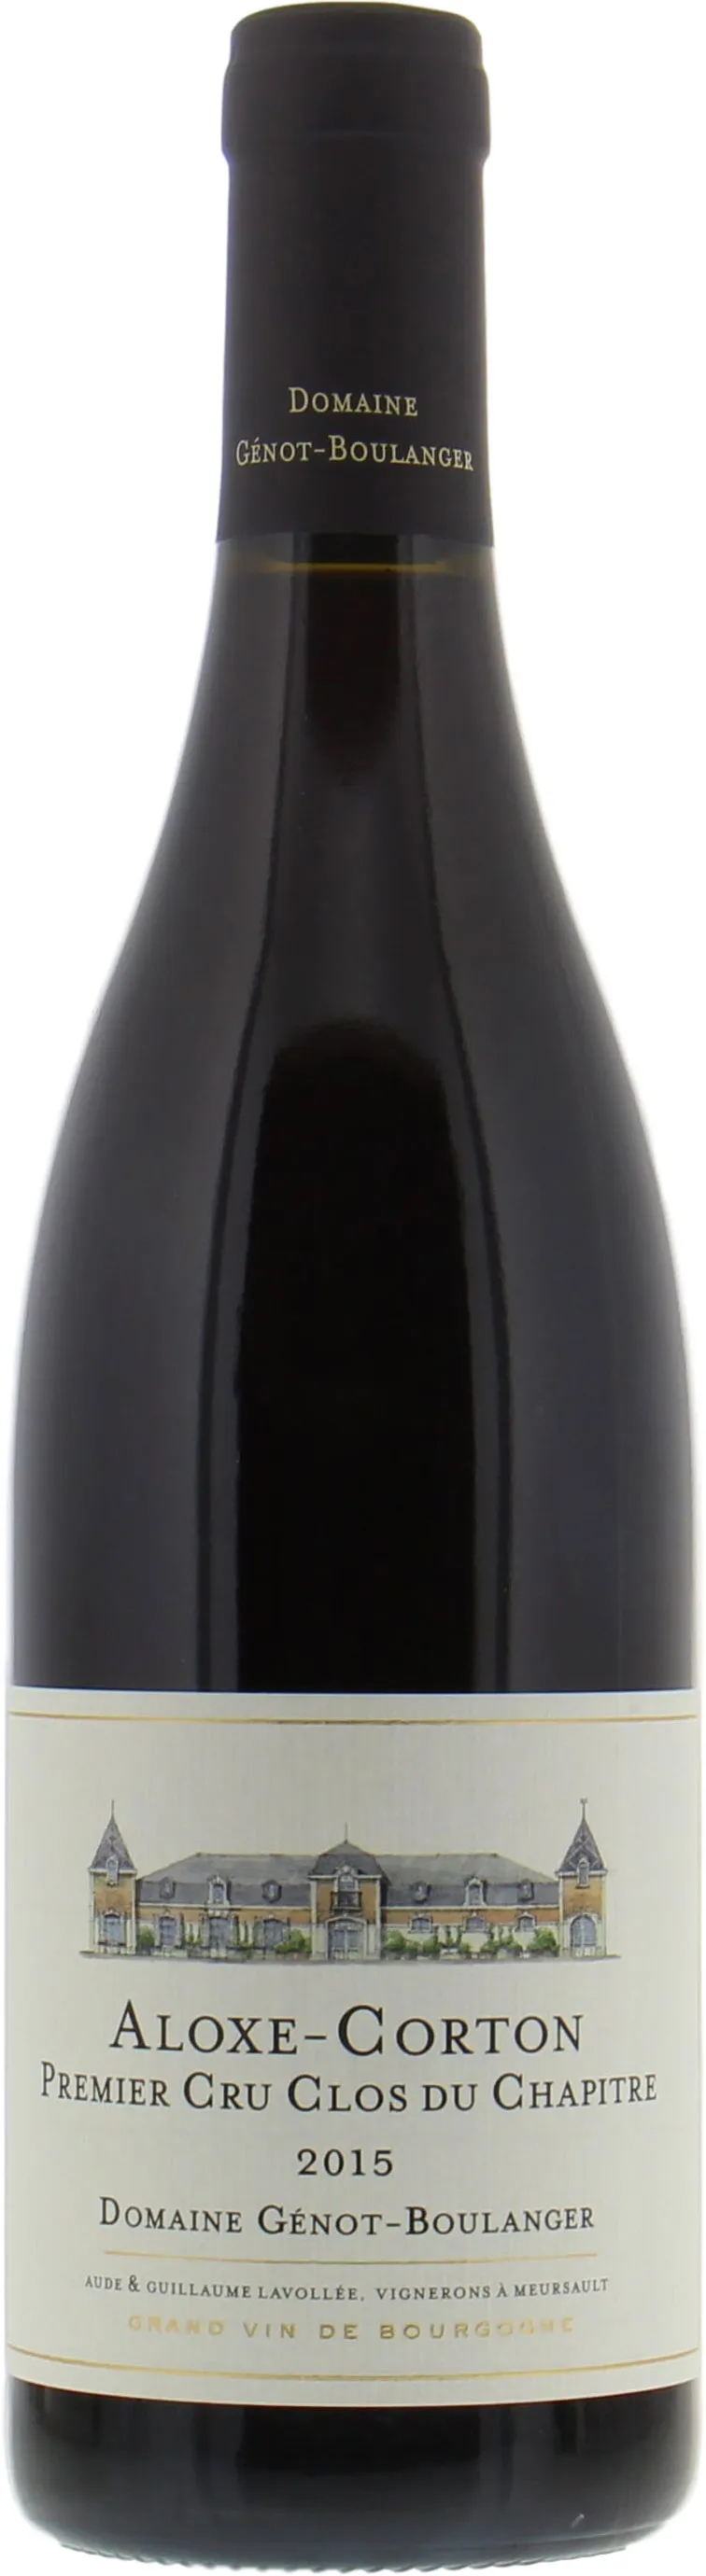 Bottle of Domaine Génot-Boulanger Aloxe-Corton Premier Cru 'Clos du Chapître' from search results